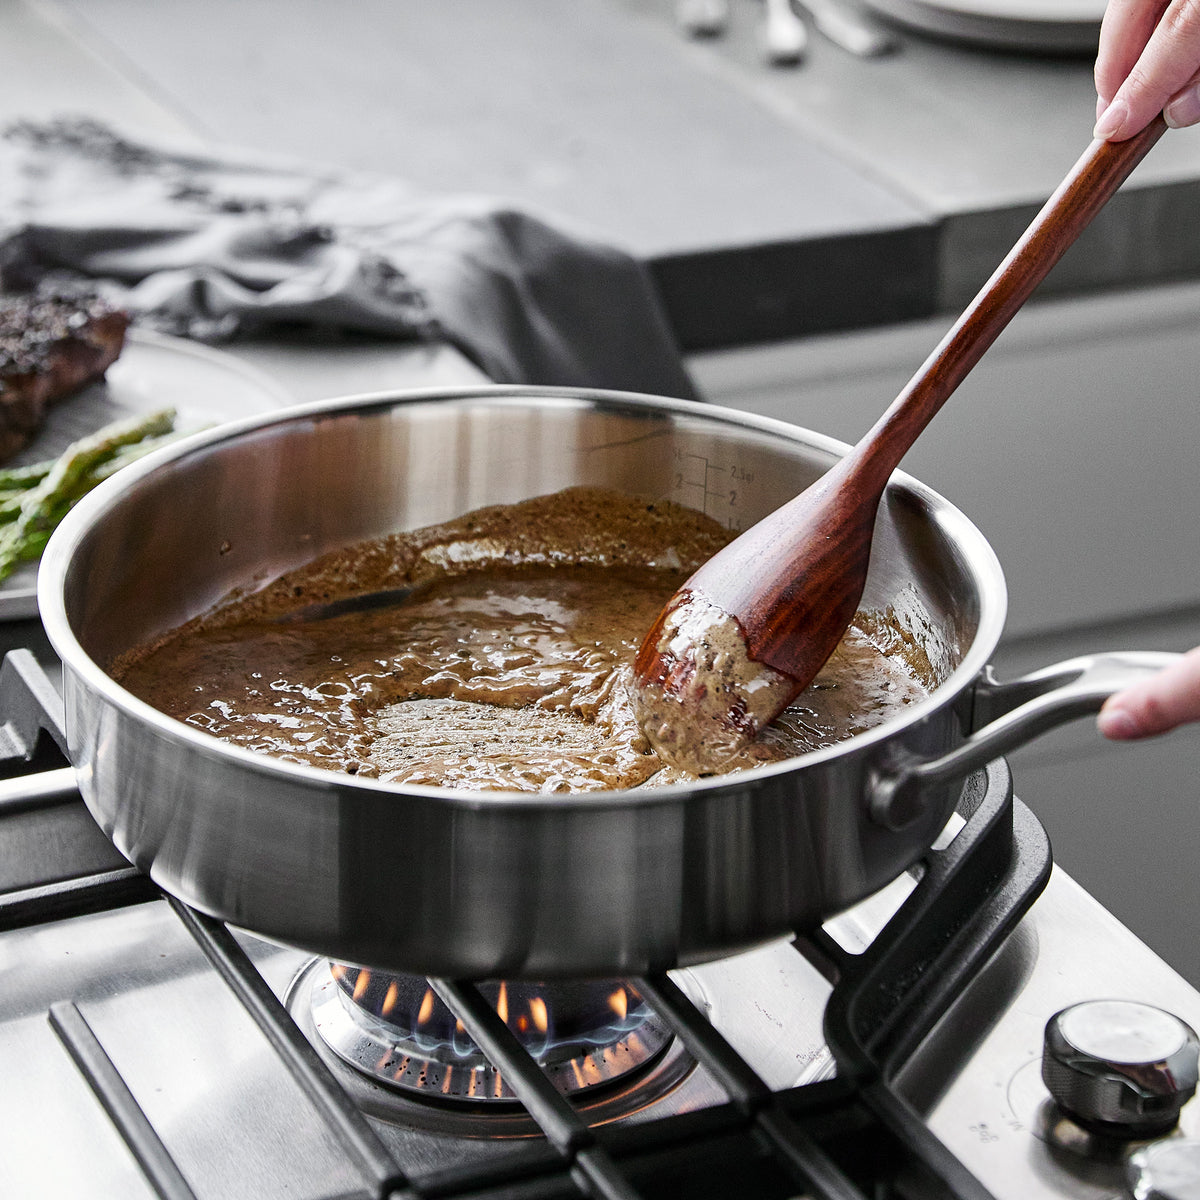 Merten & Storck Stainless Steel Saucepan With Lid 3 Quart - World Market